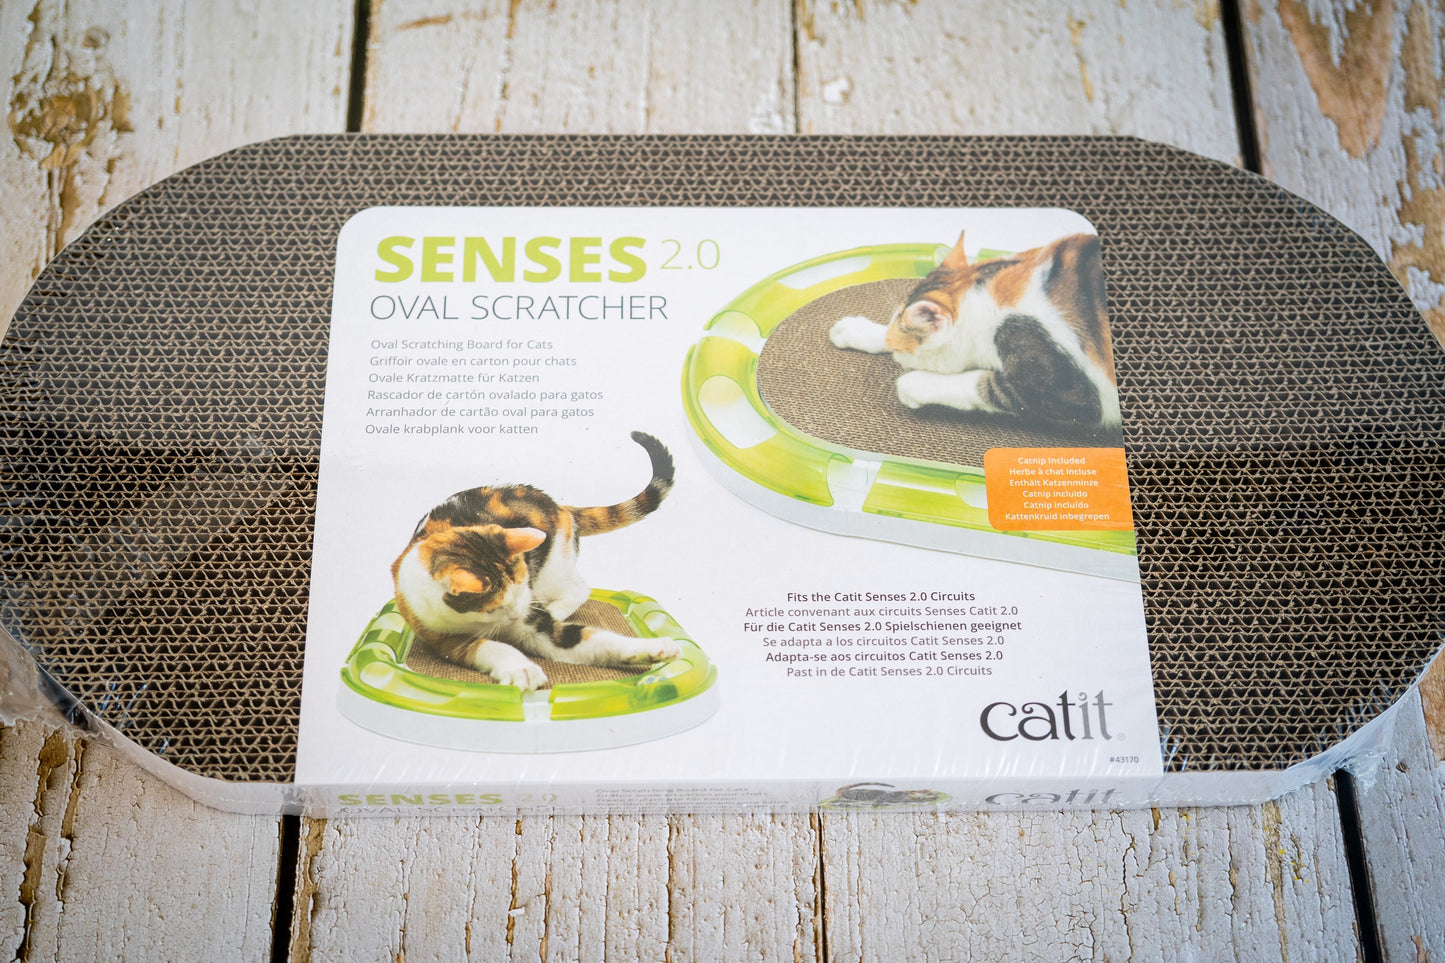 Planche à gratter ovale pour chat avec herbe à chat incluse de la marque Catit.